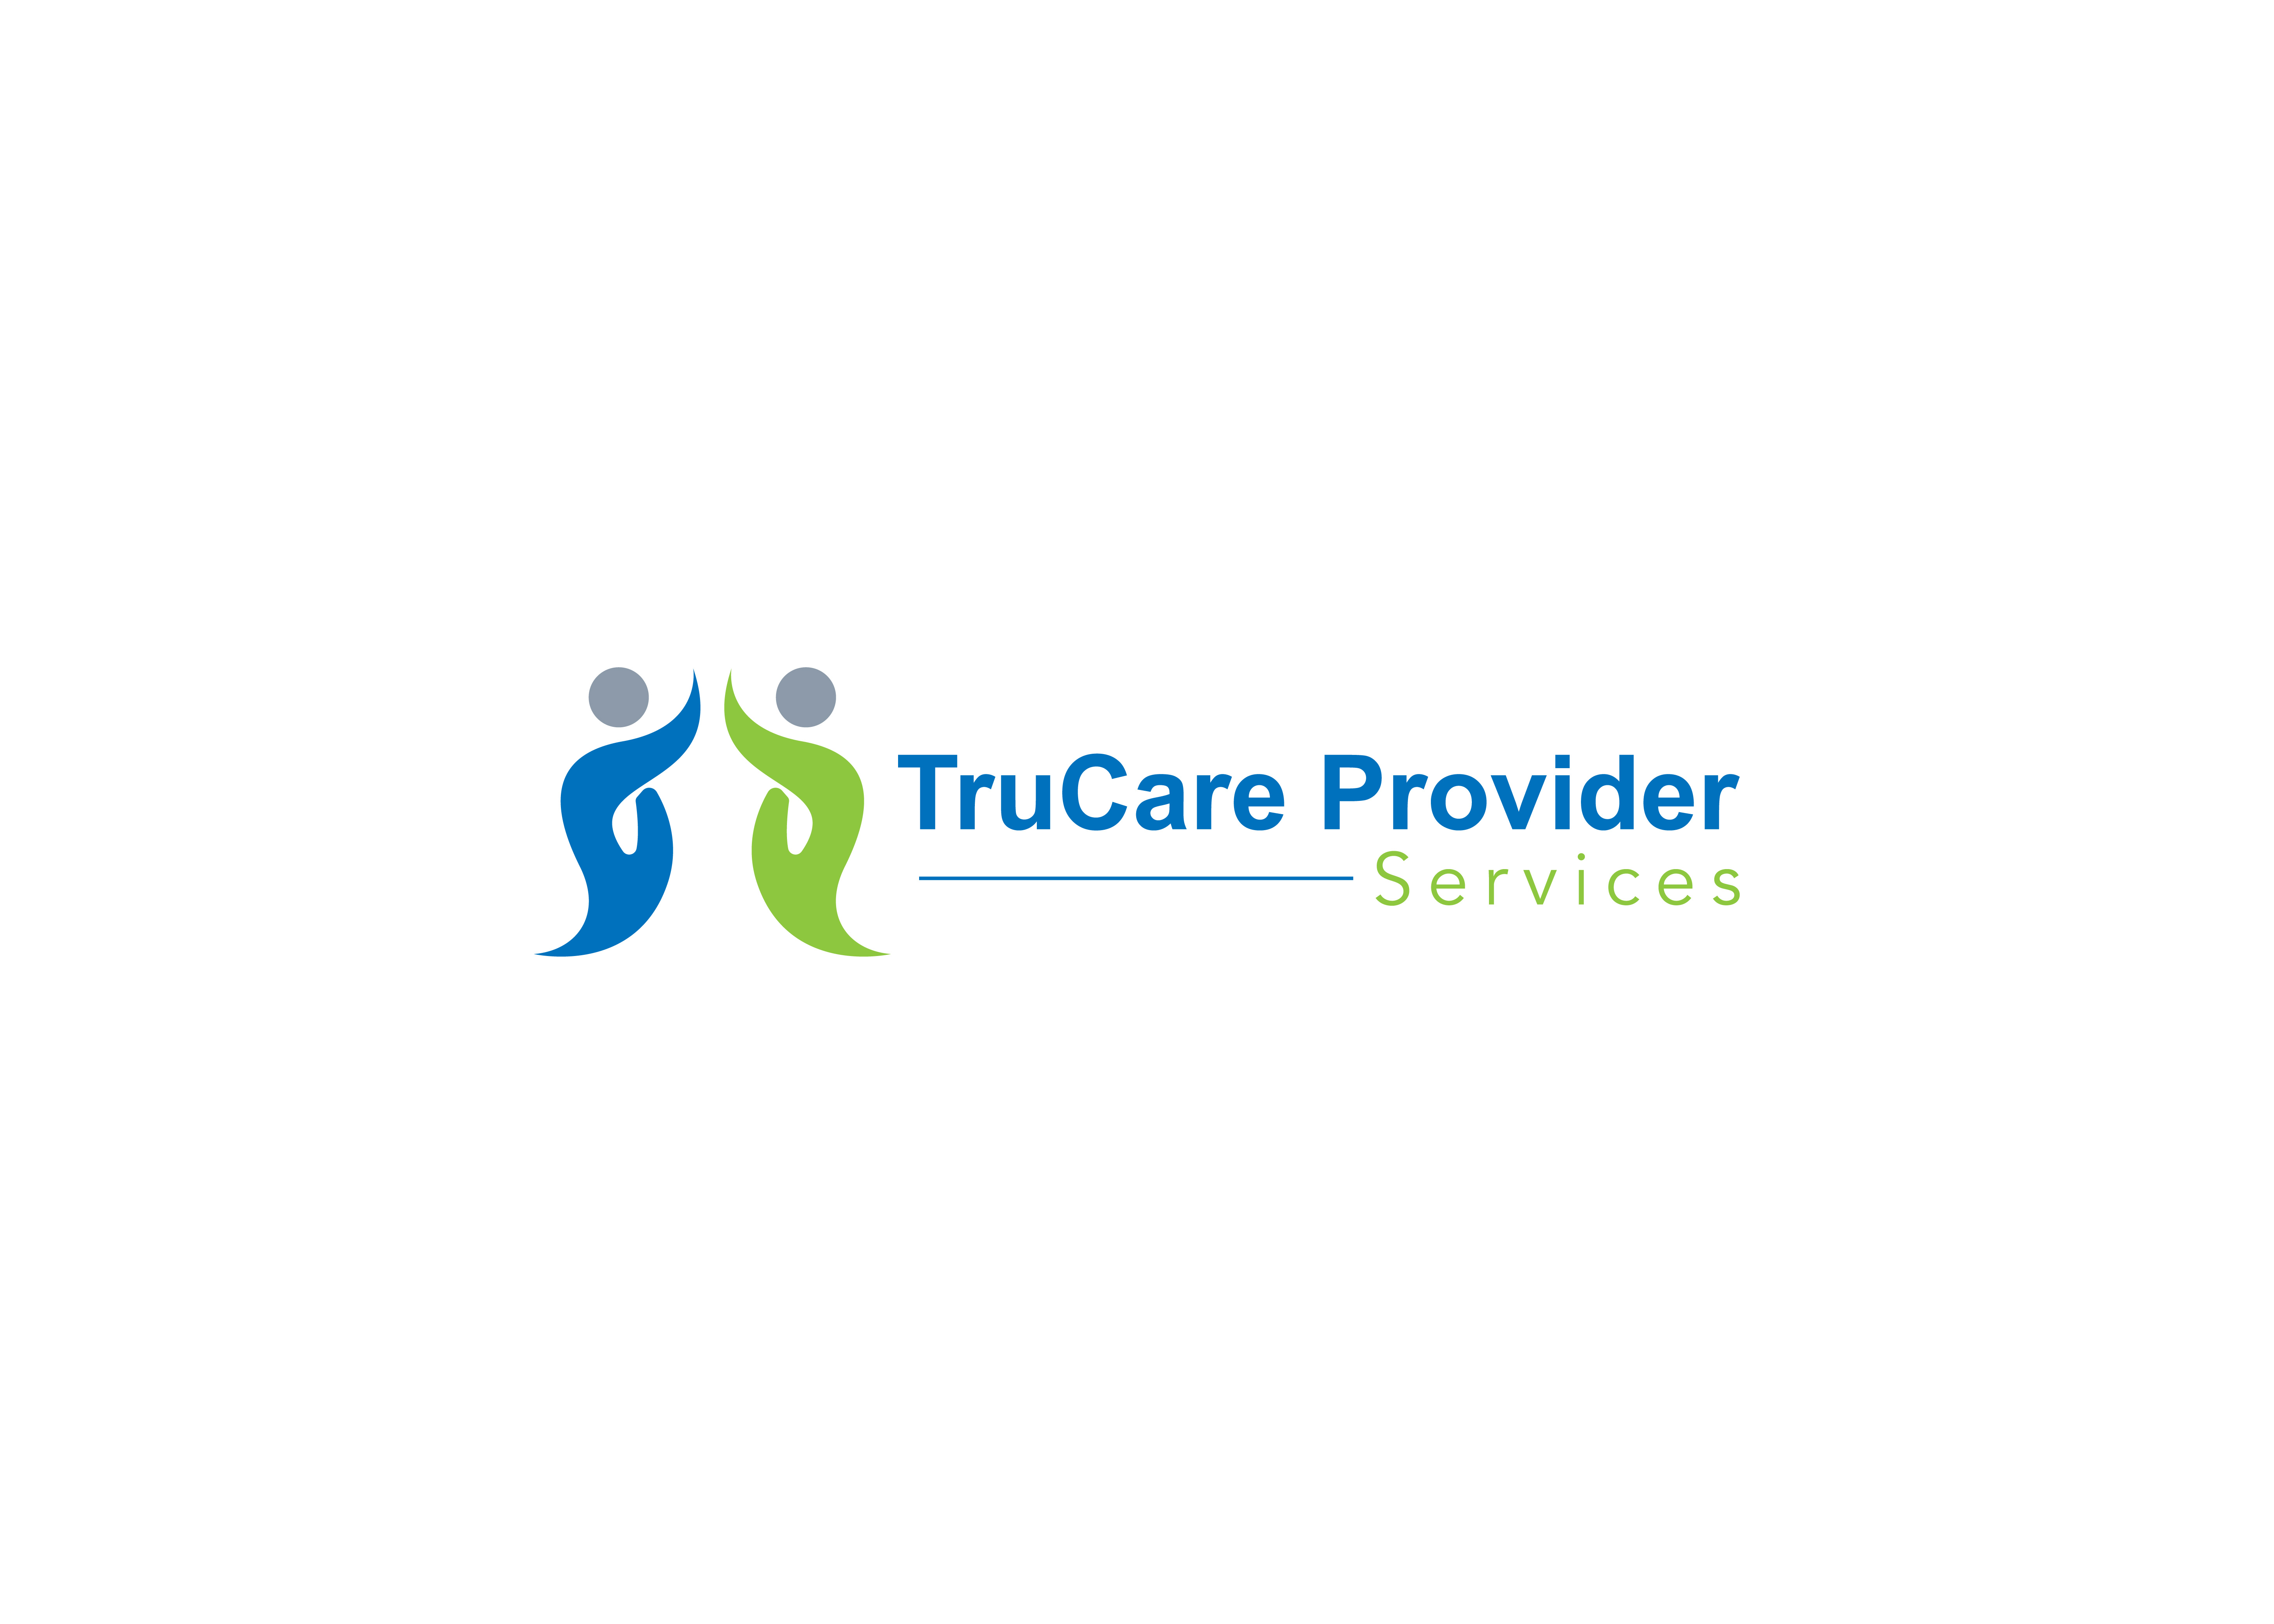 TruCare Provider Services